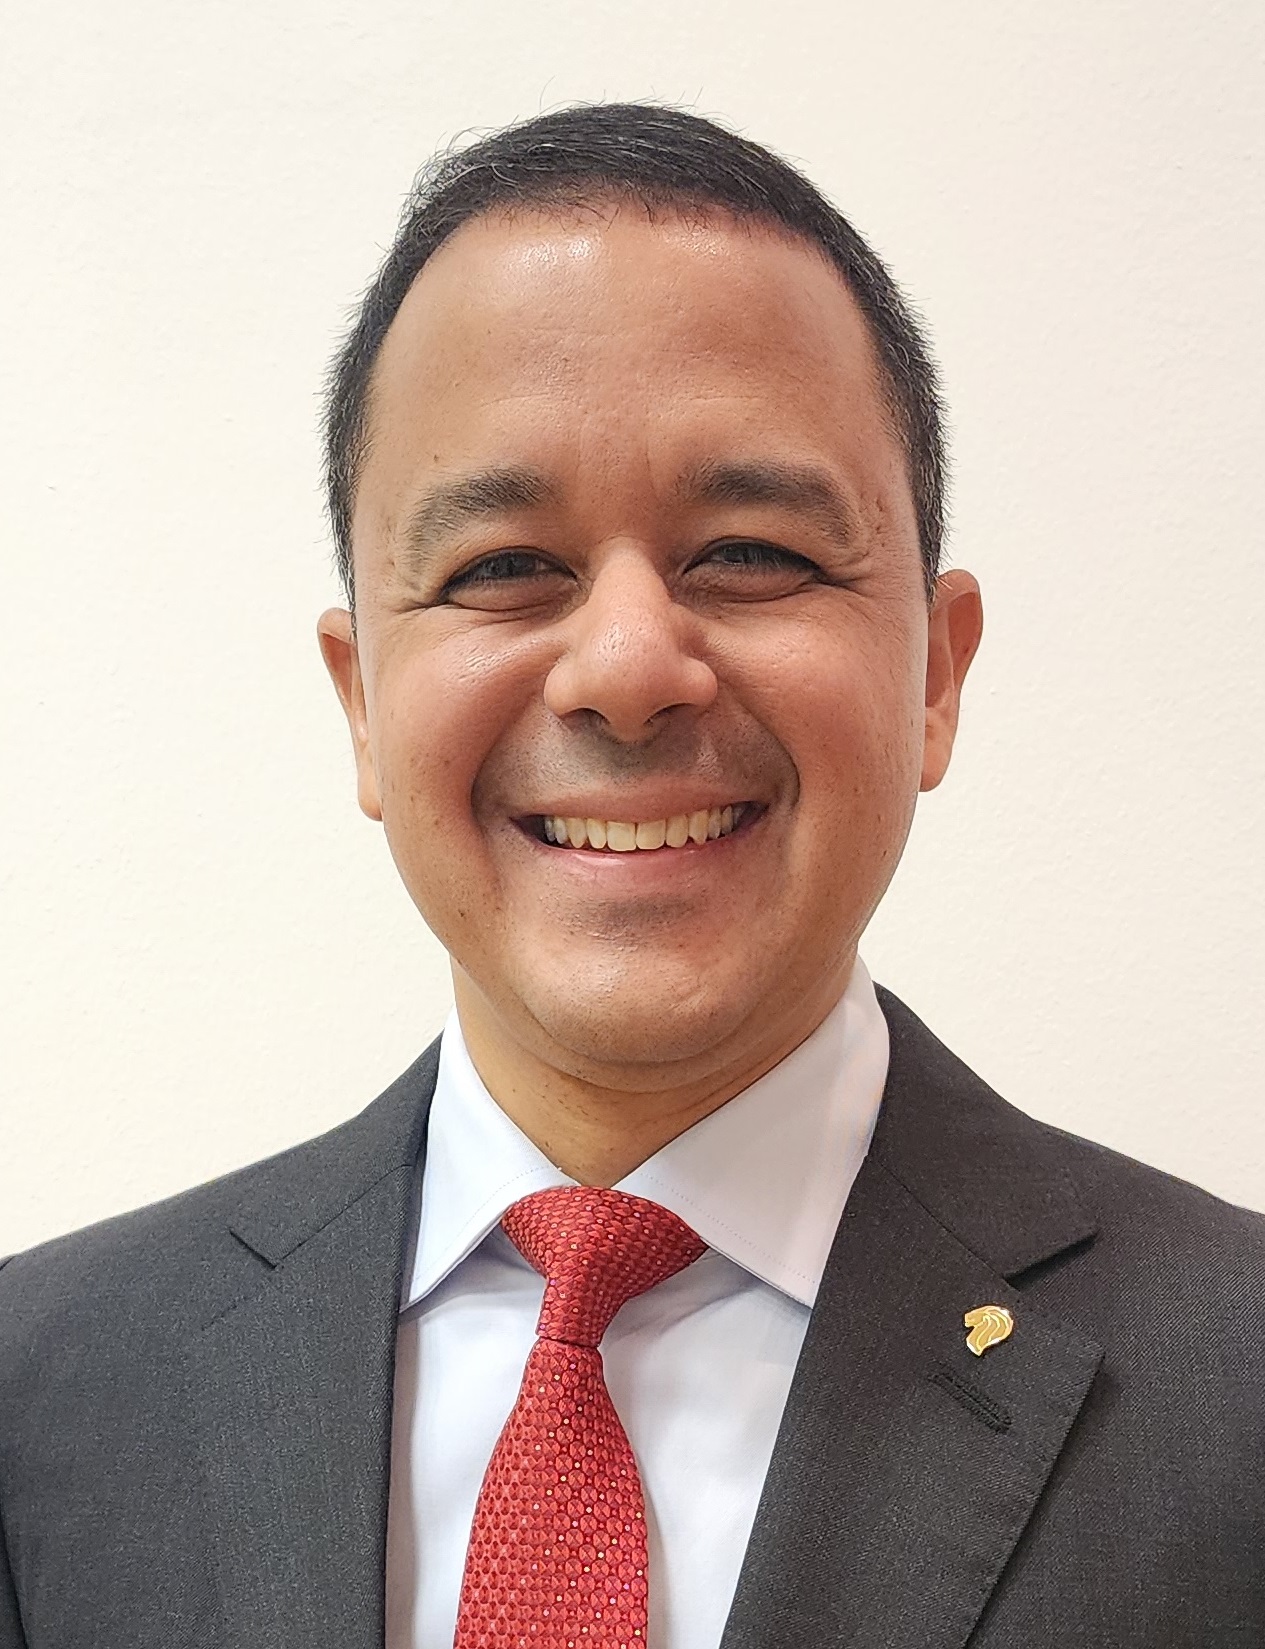 Deputy Speaker De Souza